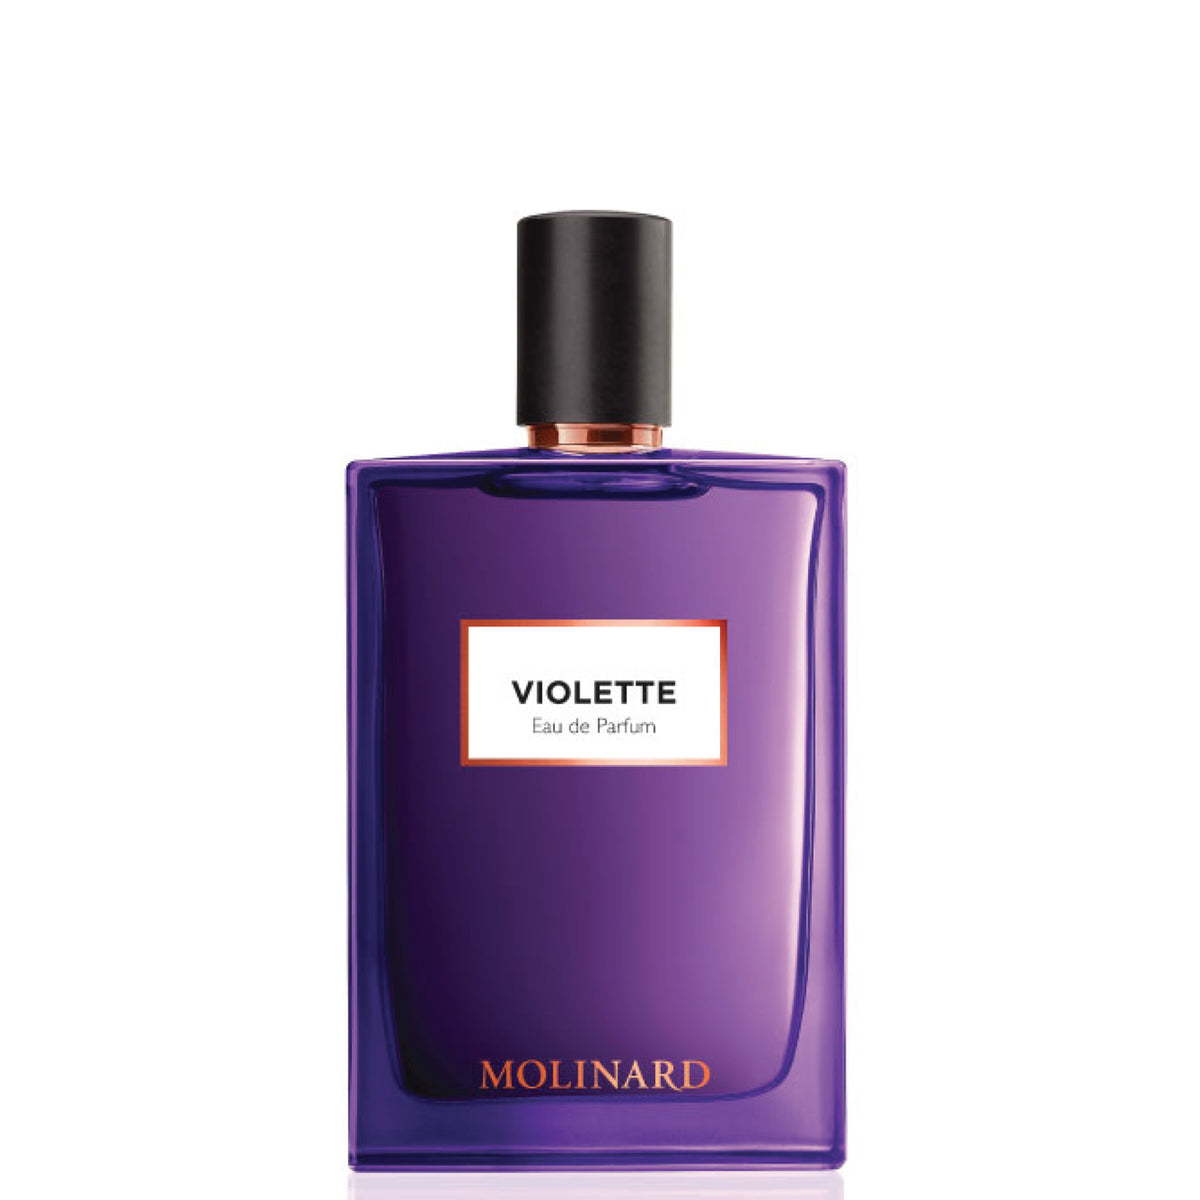 A purple Molinard Violette Eau de Parfum bottle with woody notes, against a white background.